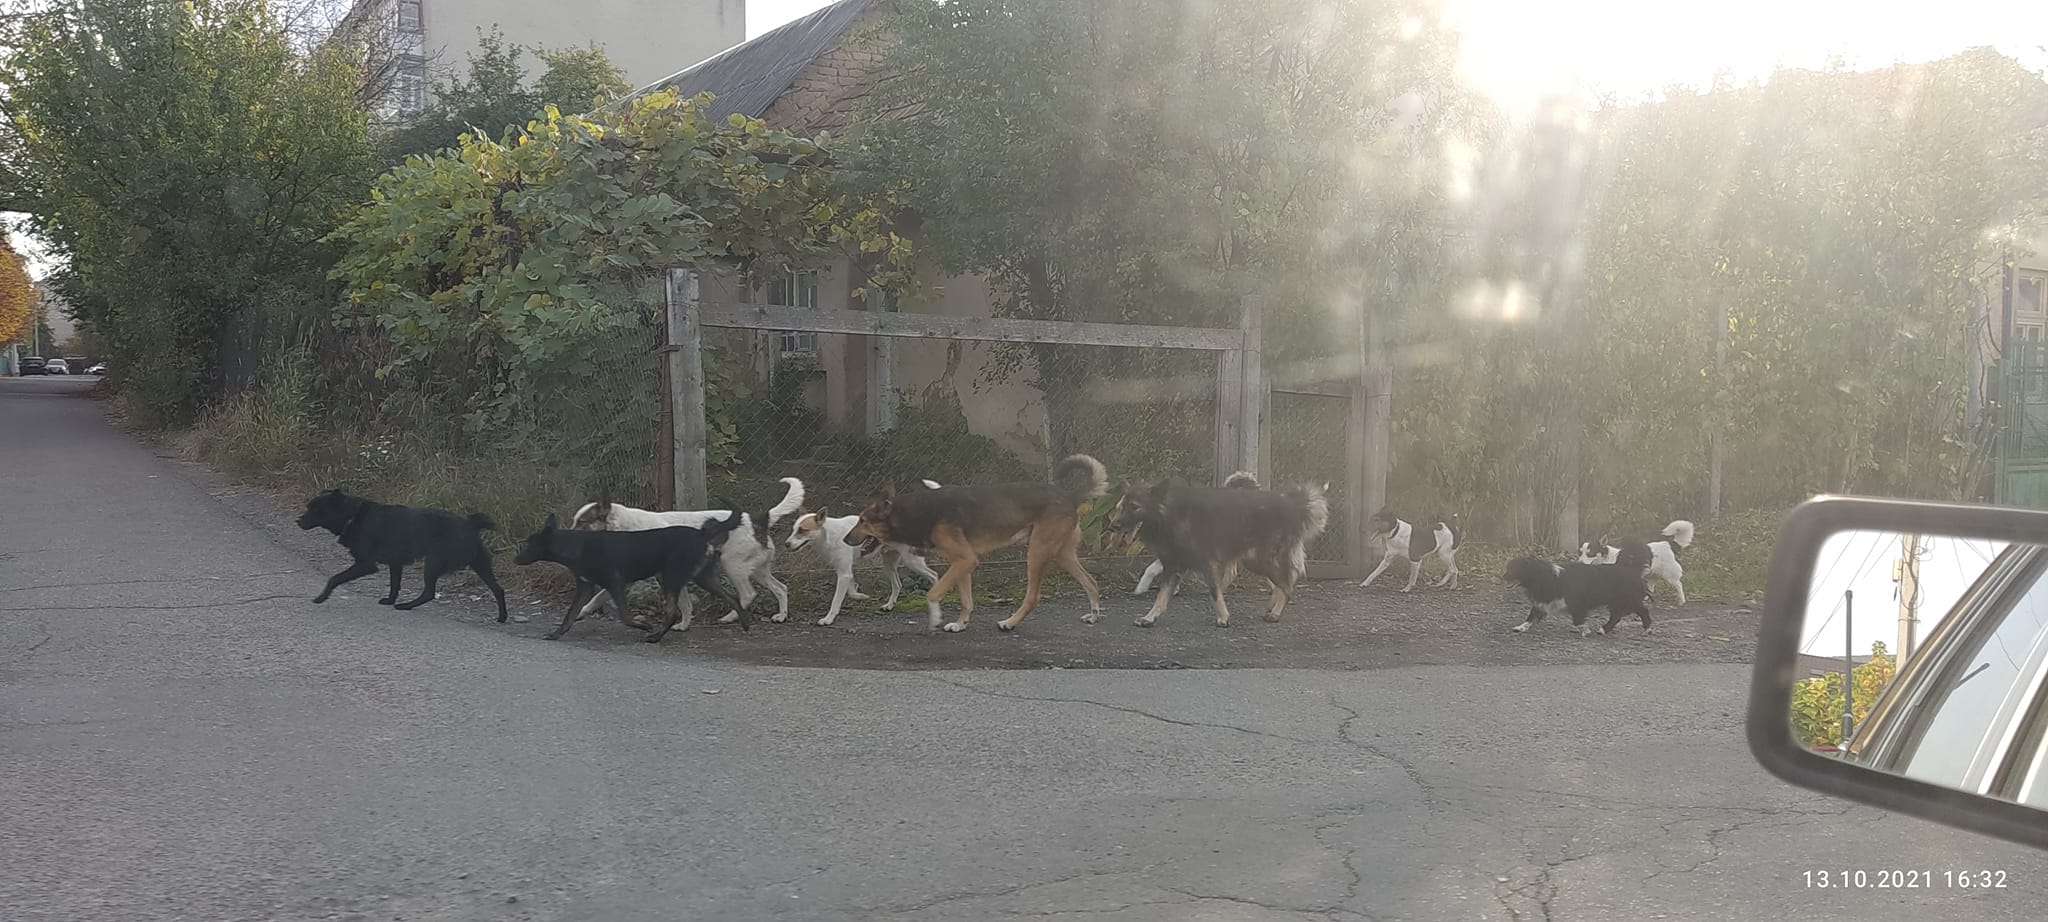 На этот раз возле школы и детского сада было замечено большое количество собак.